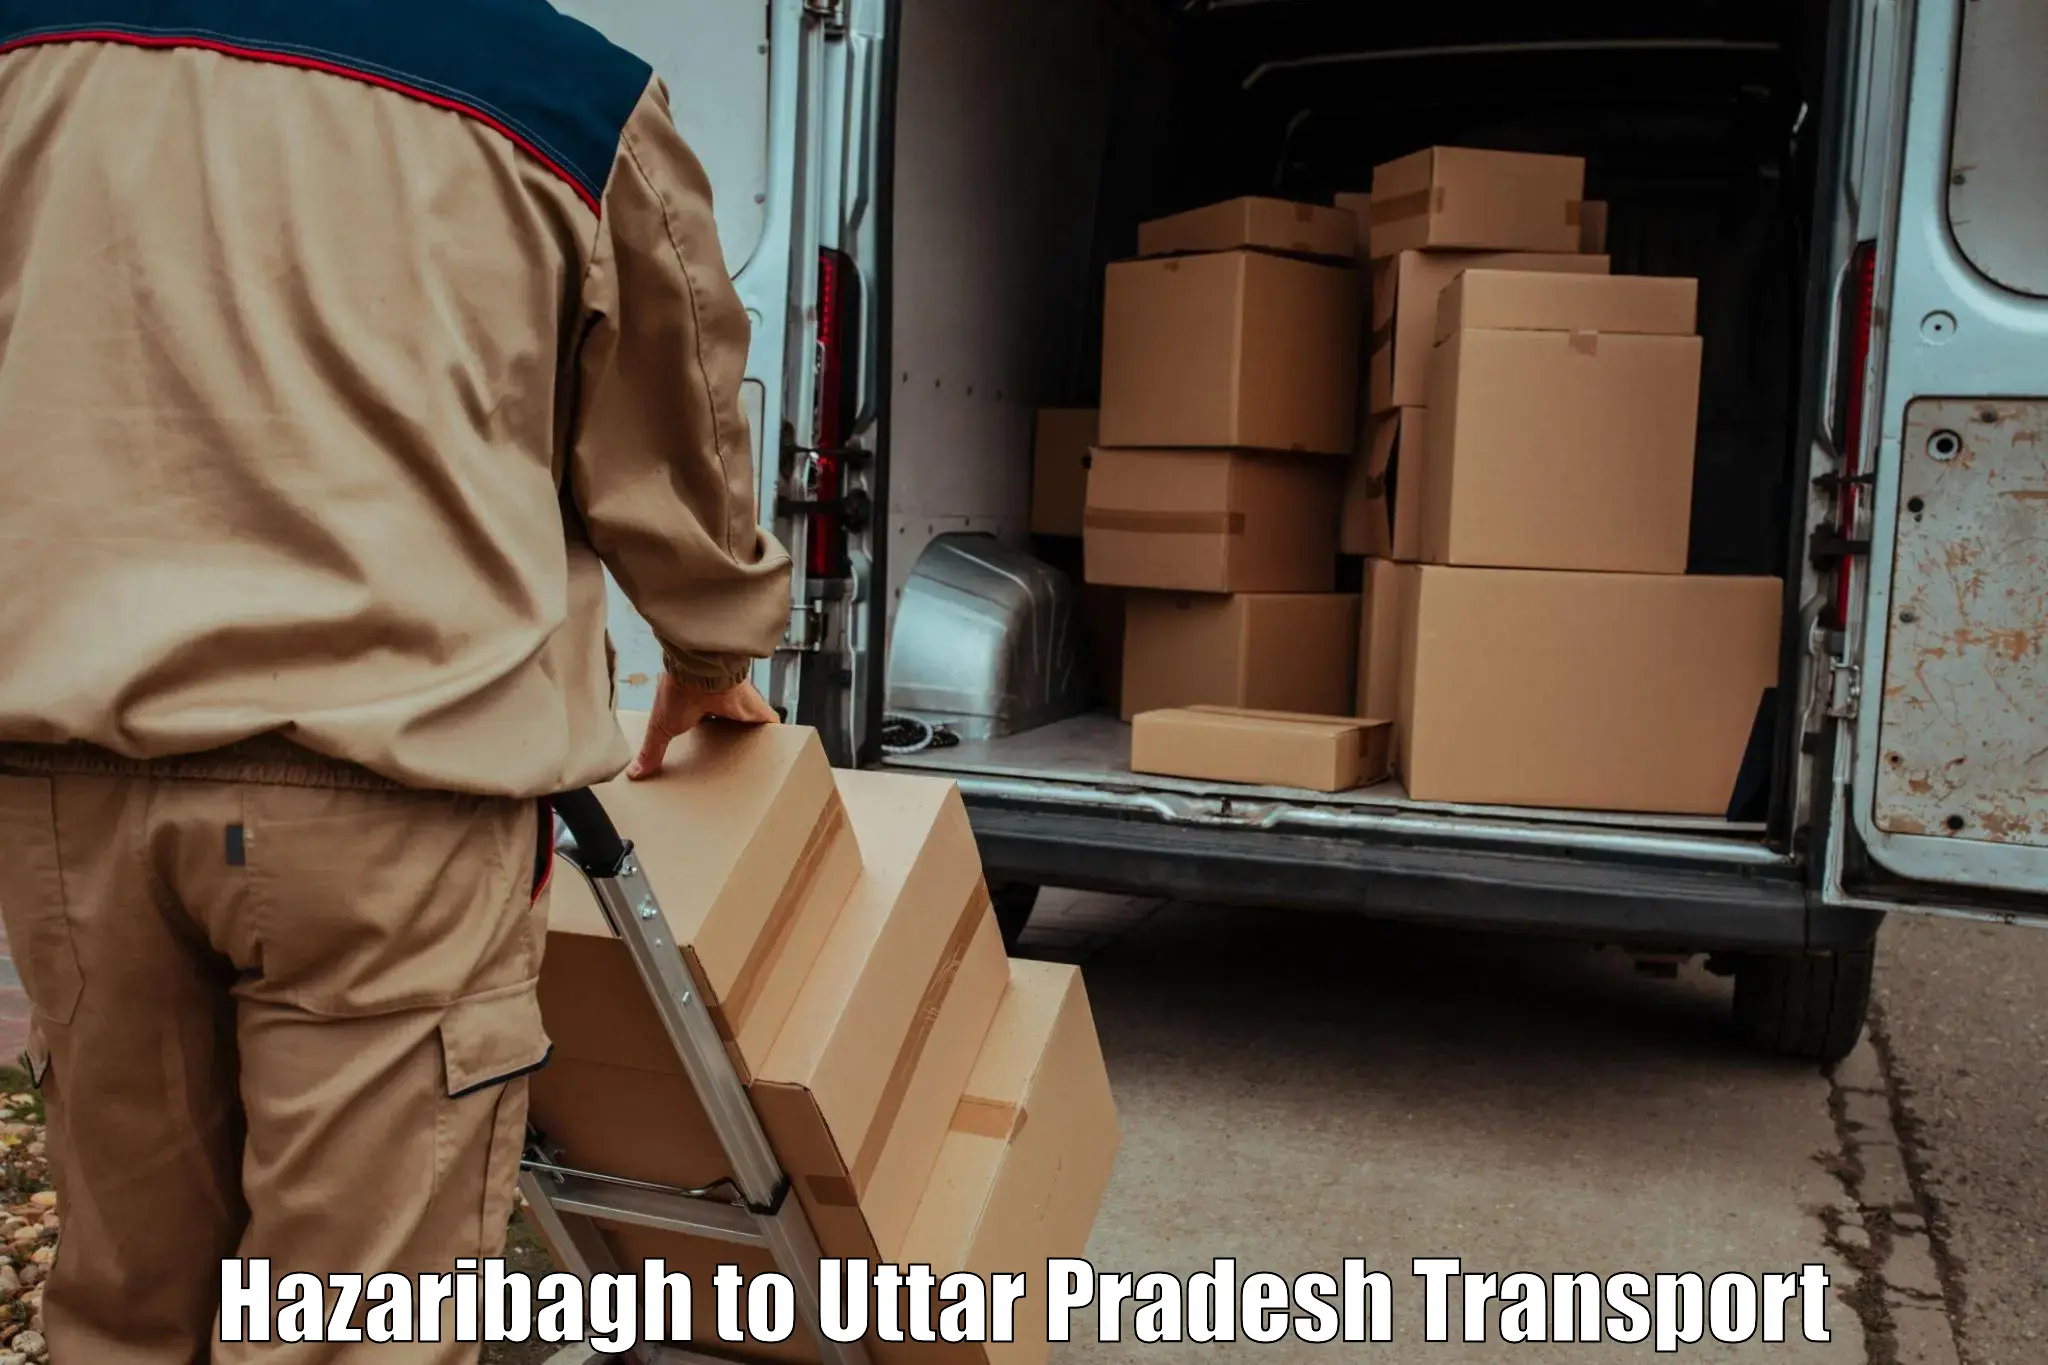 Cargo train transport services Hazaribagh to Pachperwa